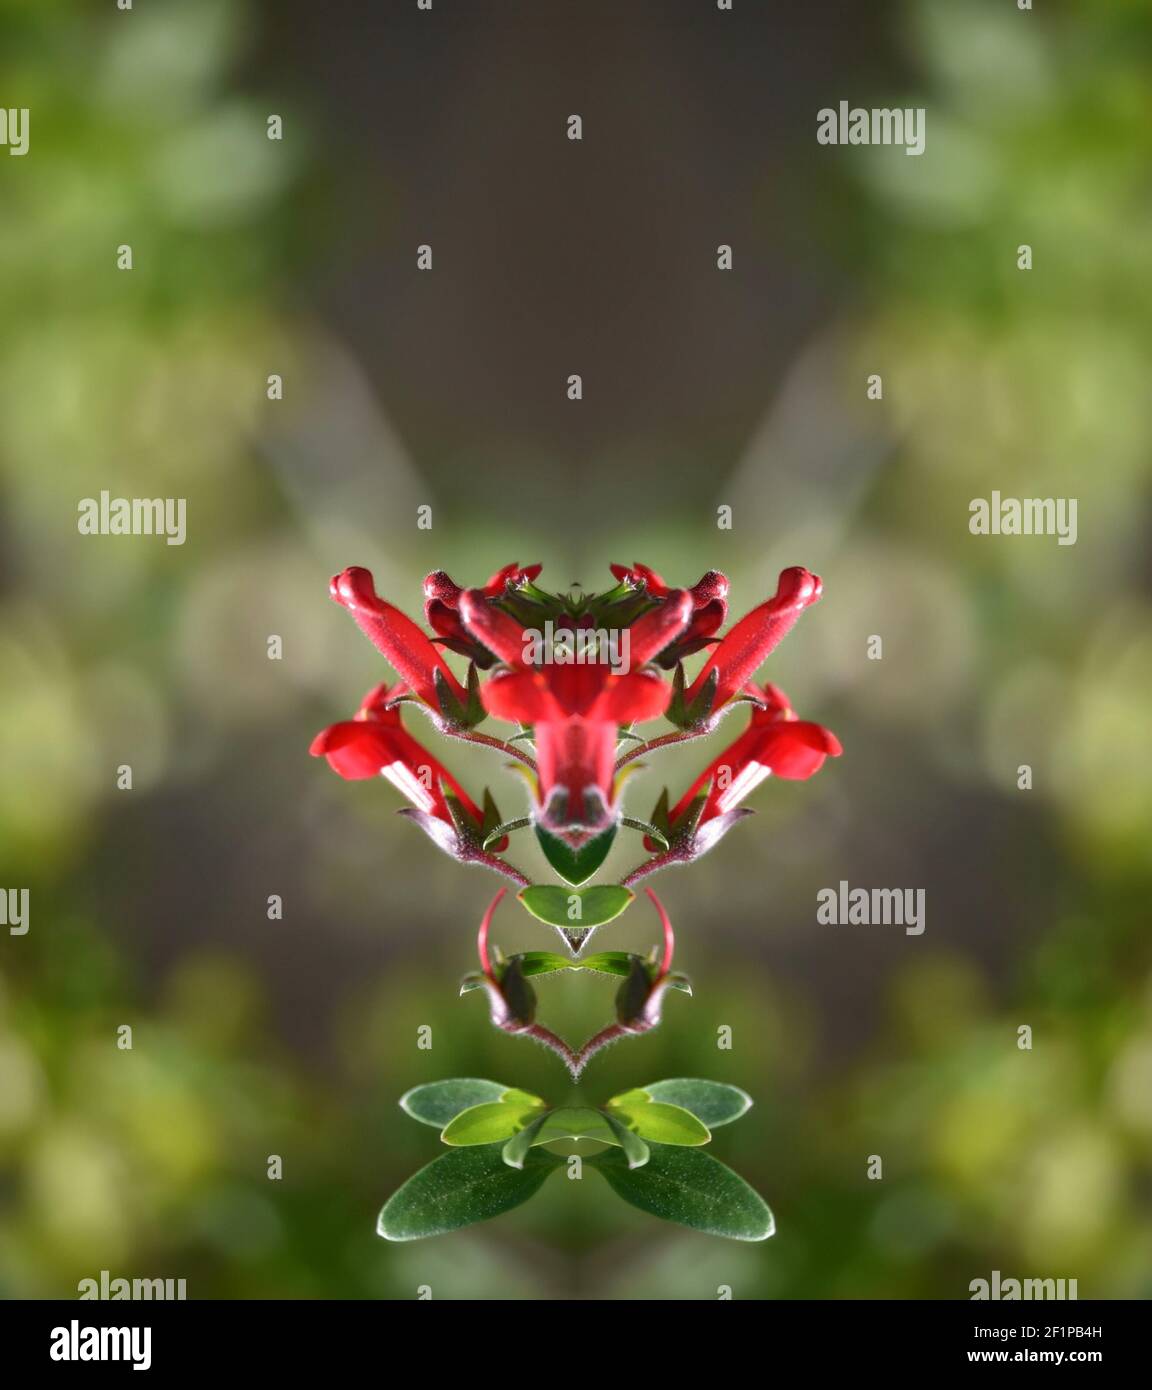 Galvezia speciosa (île snapdragon) plante ornementale avec des fleurs rouges en trompette et des feuilles brillantes sur une composition abstraite. Banque D'Images